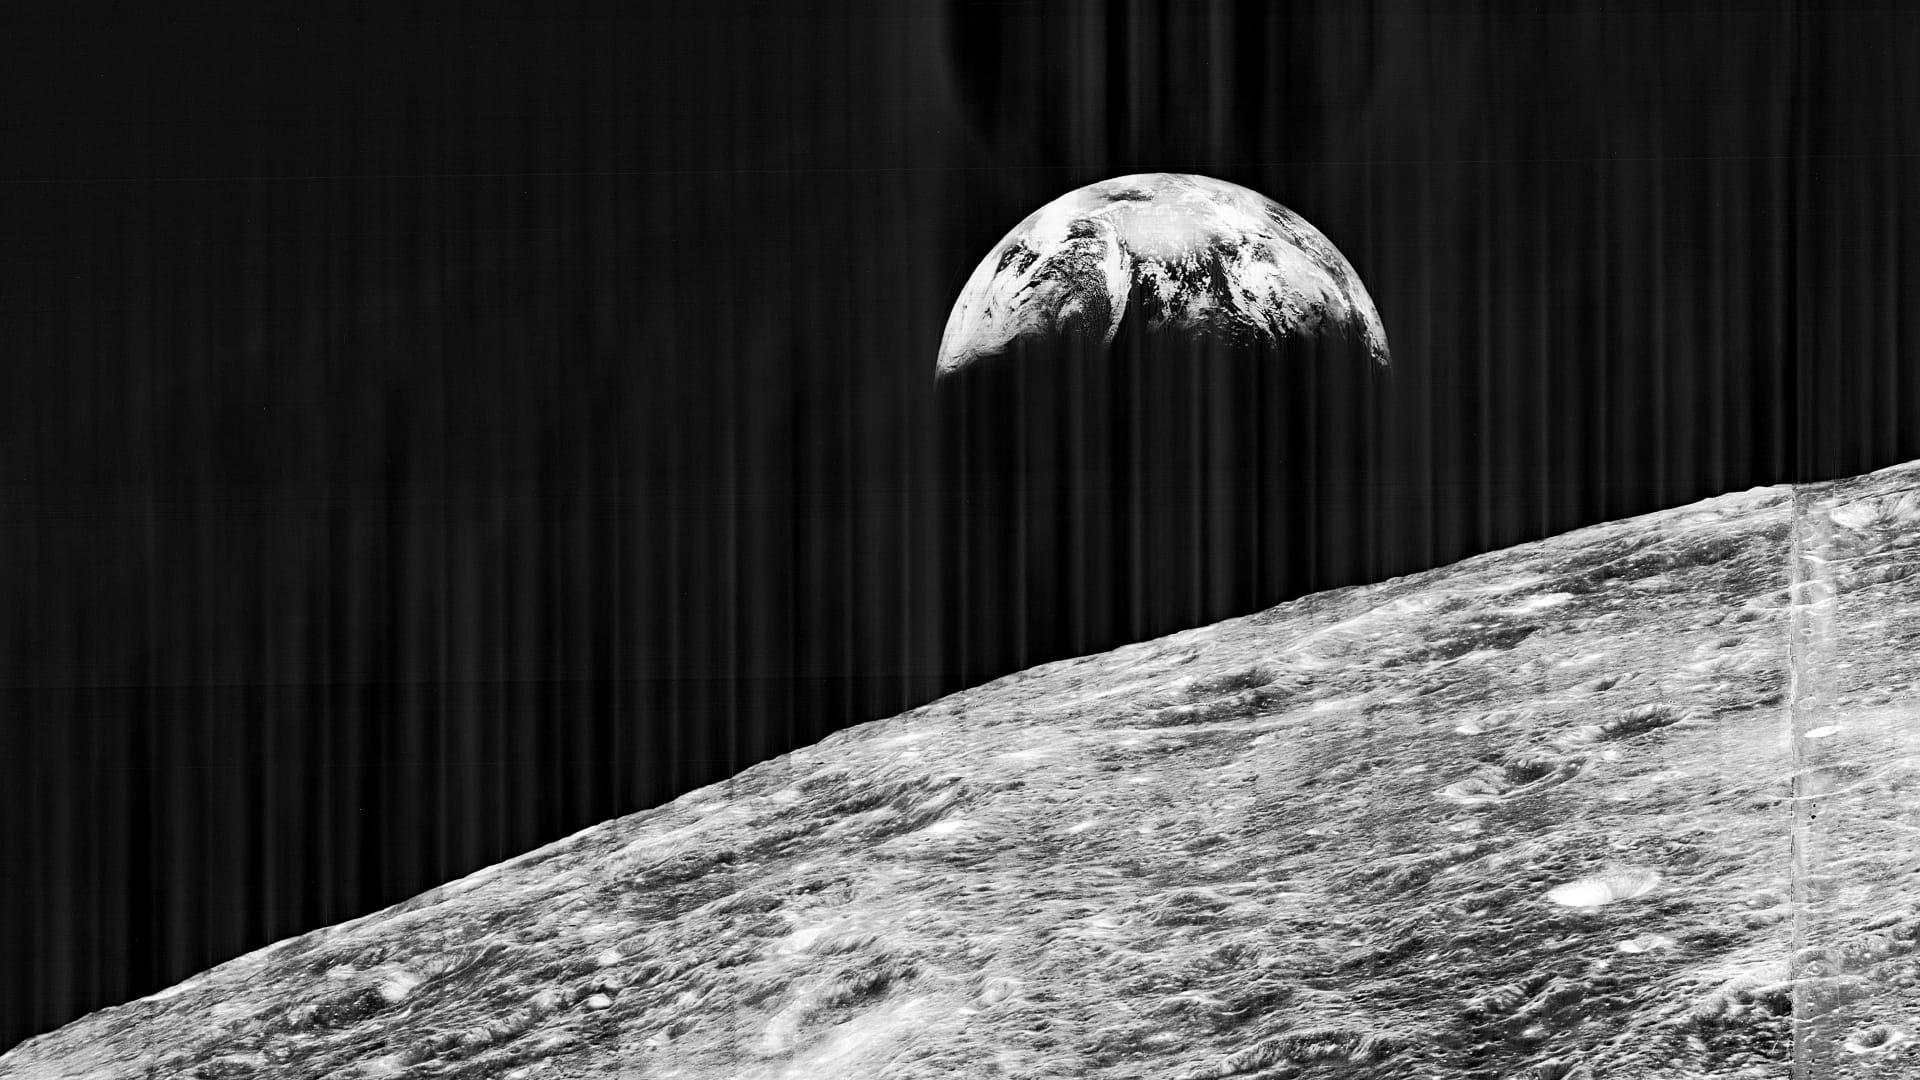 Zwart wit foto van de aarde, met op de voorgrond het maanoppervlak. Deze foto is genomen door de Lunar Orbiter 1, die het maanoppervlak in kaart moest brengen voor de Apollo landingen.  